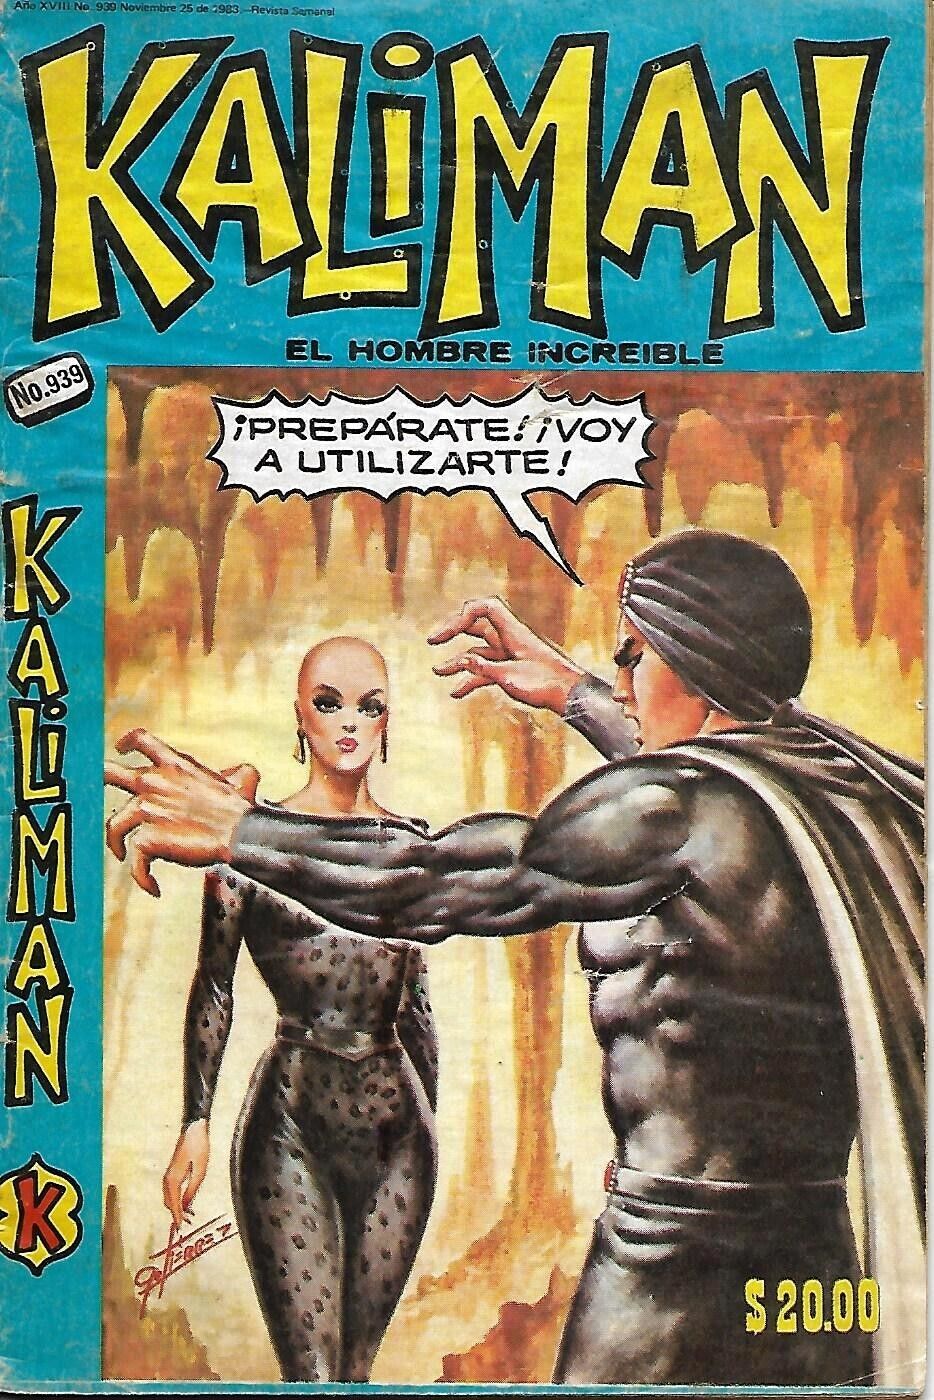 Kaliman El Hombre Increible #939 - Noviembre 25, 1983 - Mexico